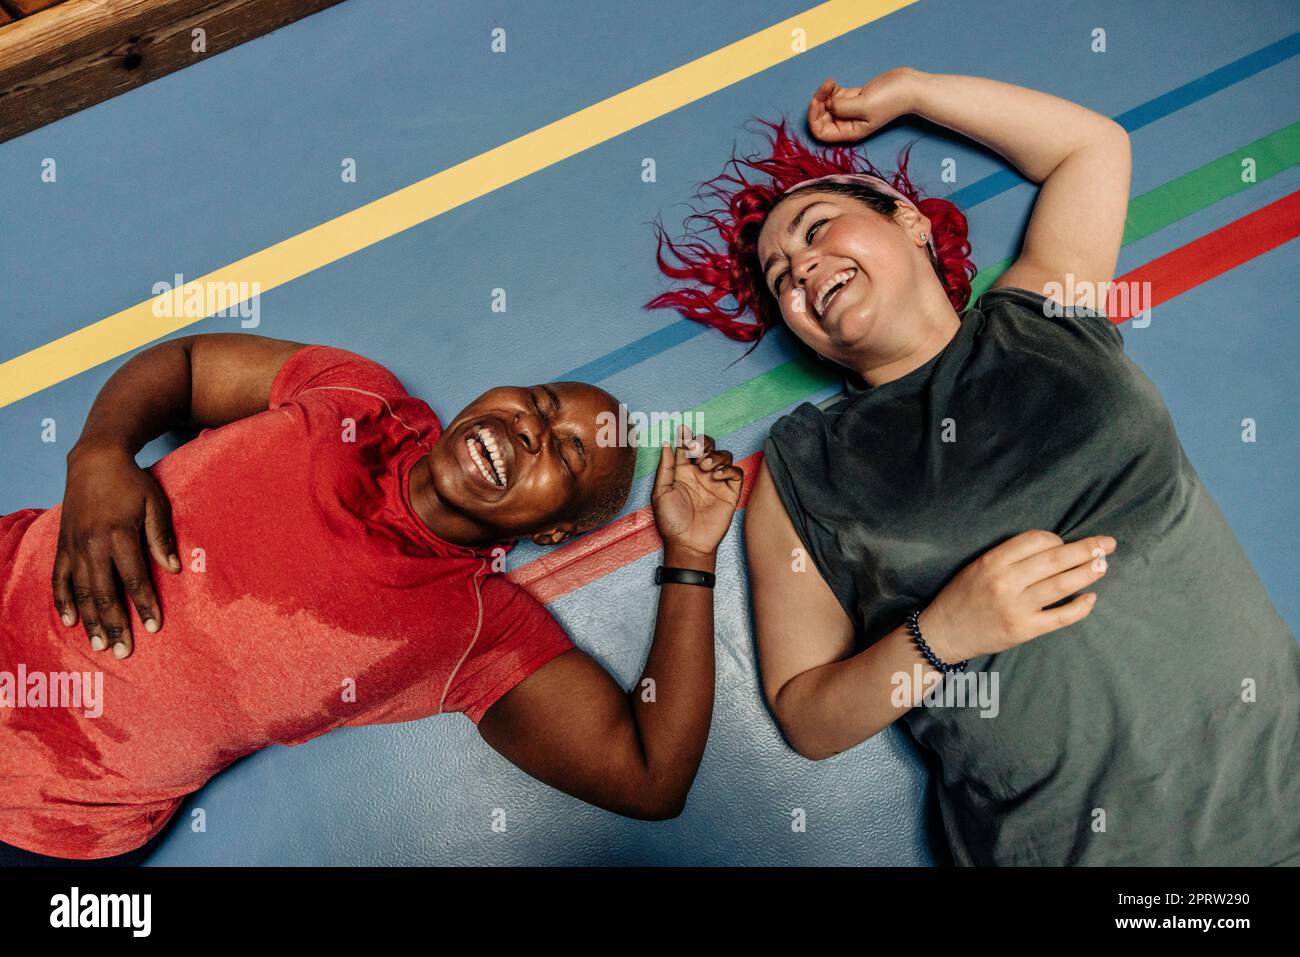 Aus dem Blickwinkel aus dem Blickwinkel heraus lachende Sportlerinnen, die auf einer Sicherheitsmatte auf dem Sportplatz liegen Stockfoto